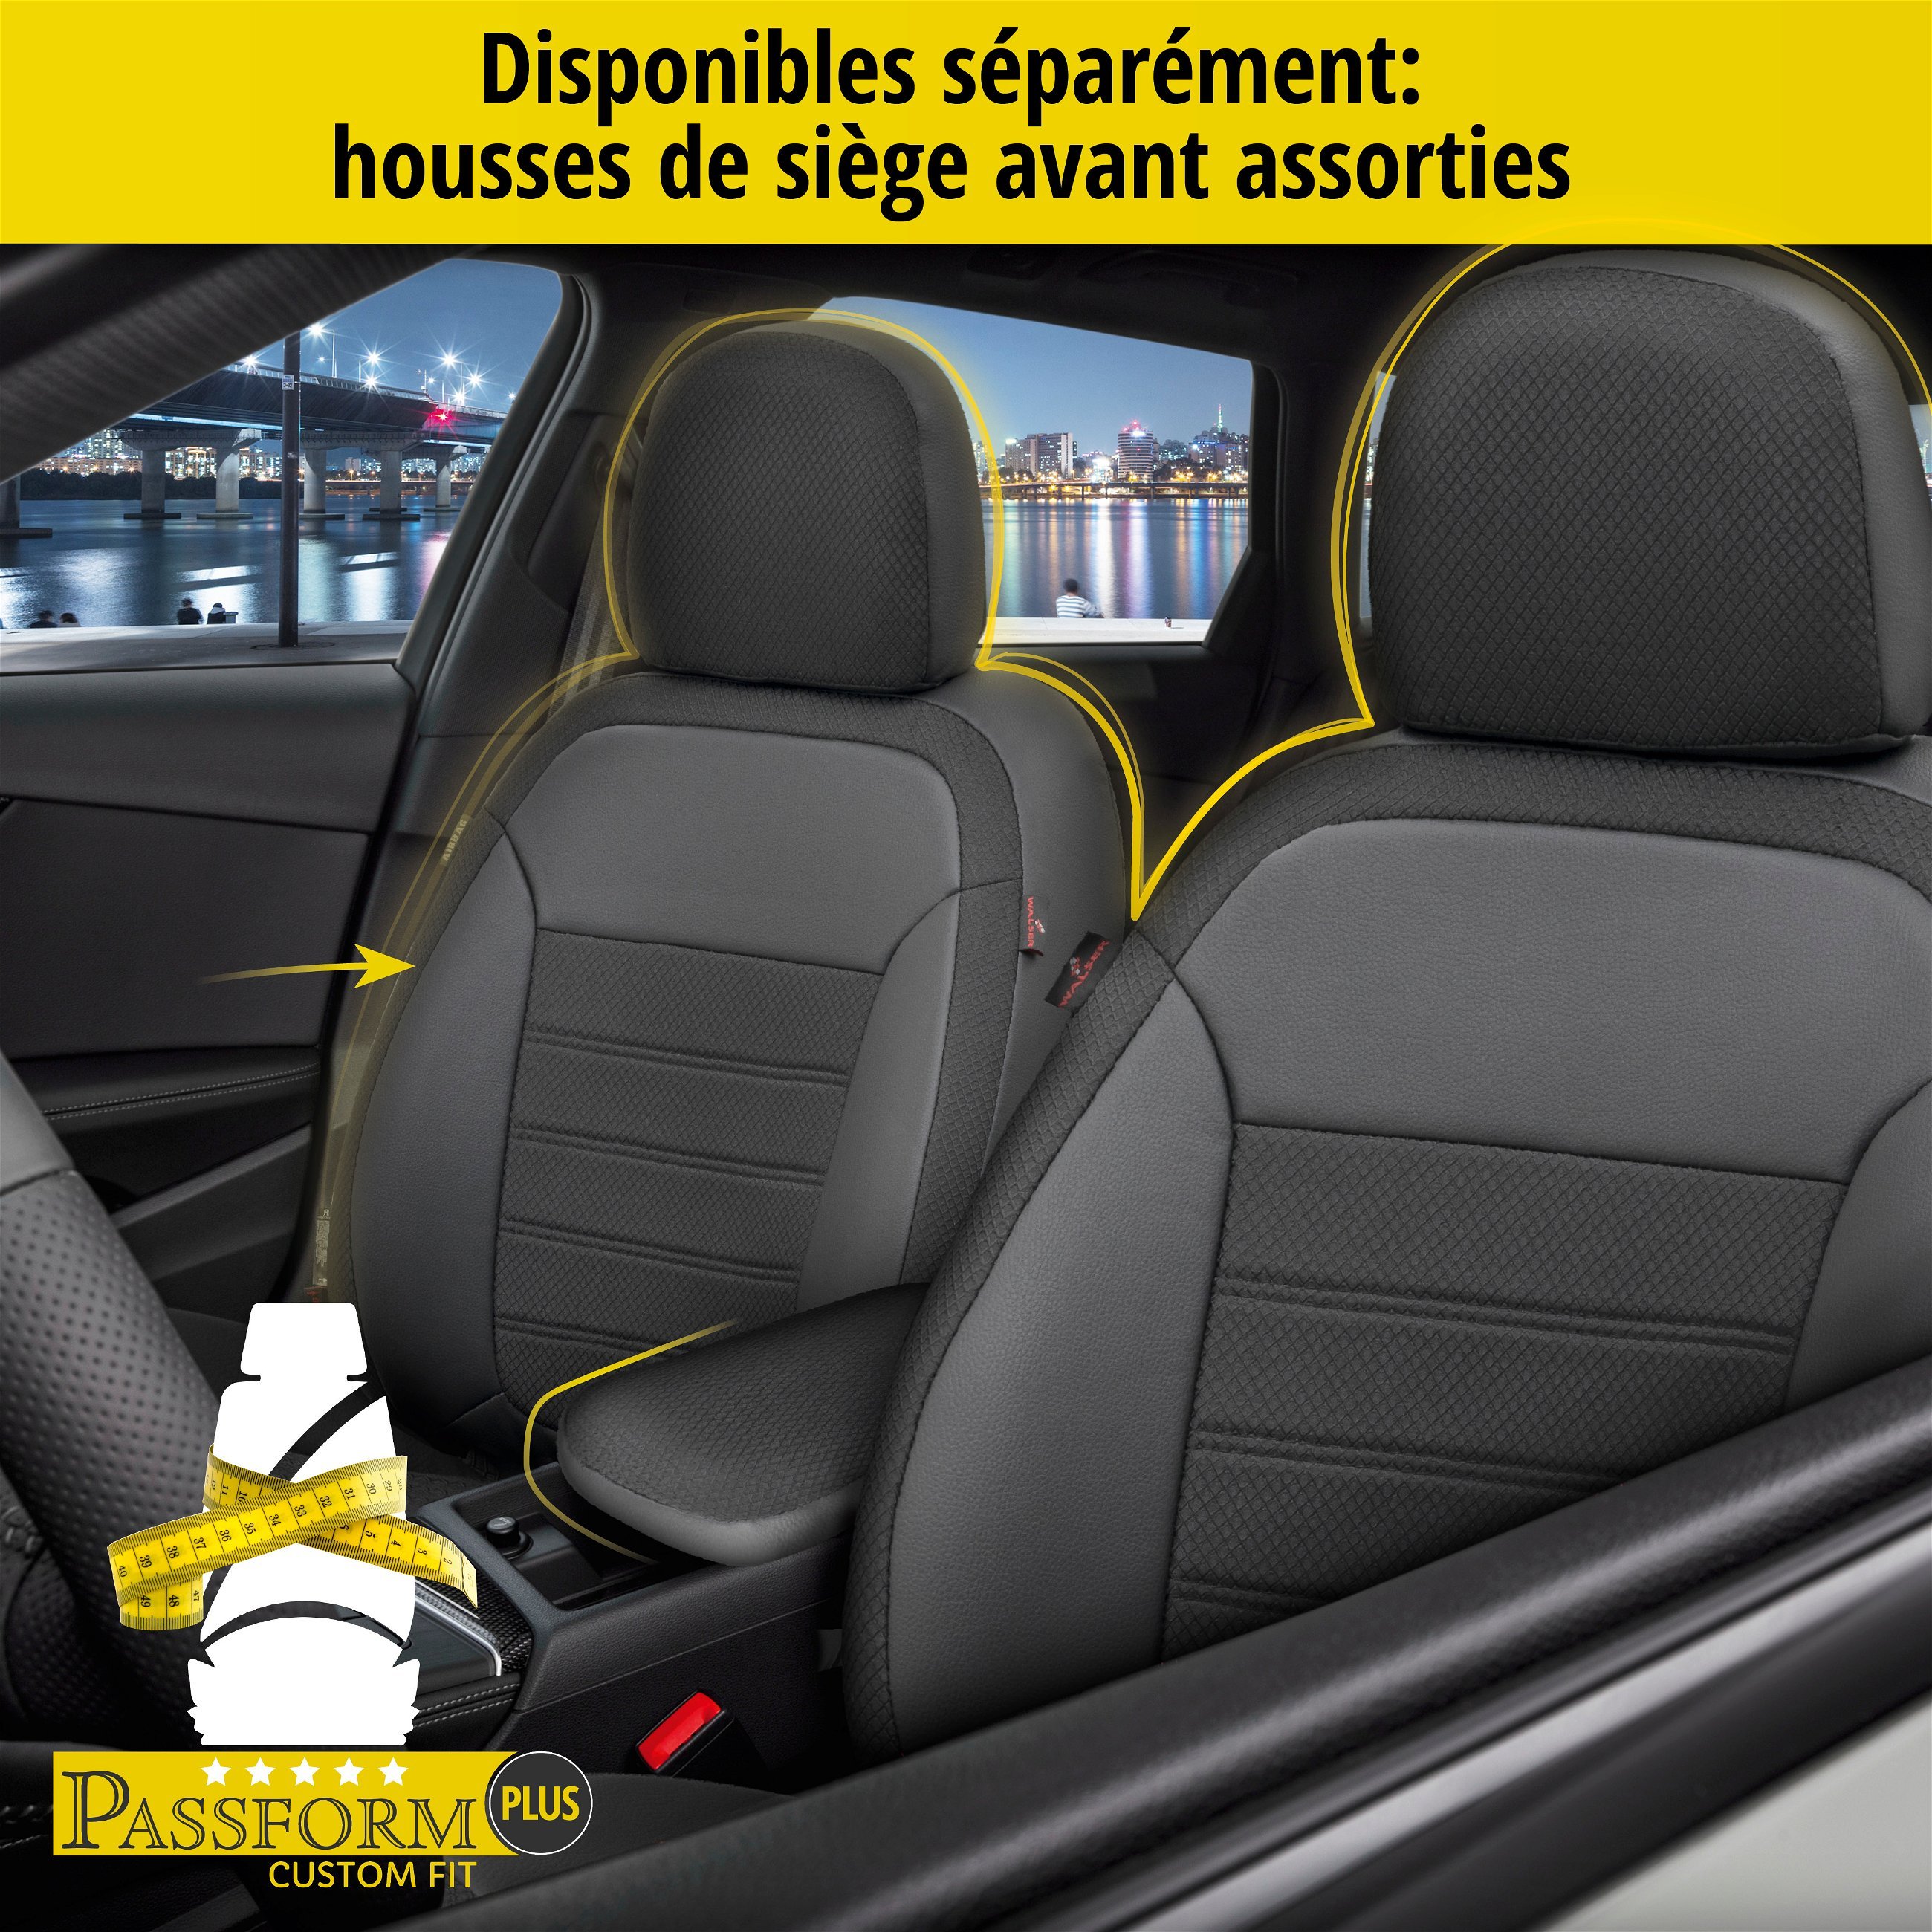 Housse de siège Aversa pour Opel Corsa E (X15) 09/2014-auj., 1 housse de siège arrière pour les sièges normaux